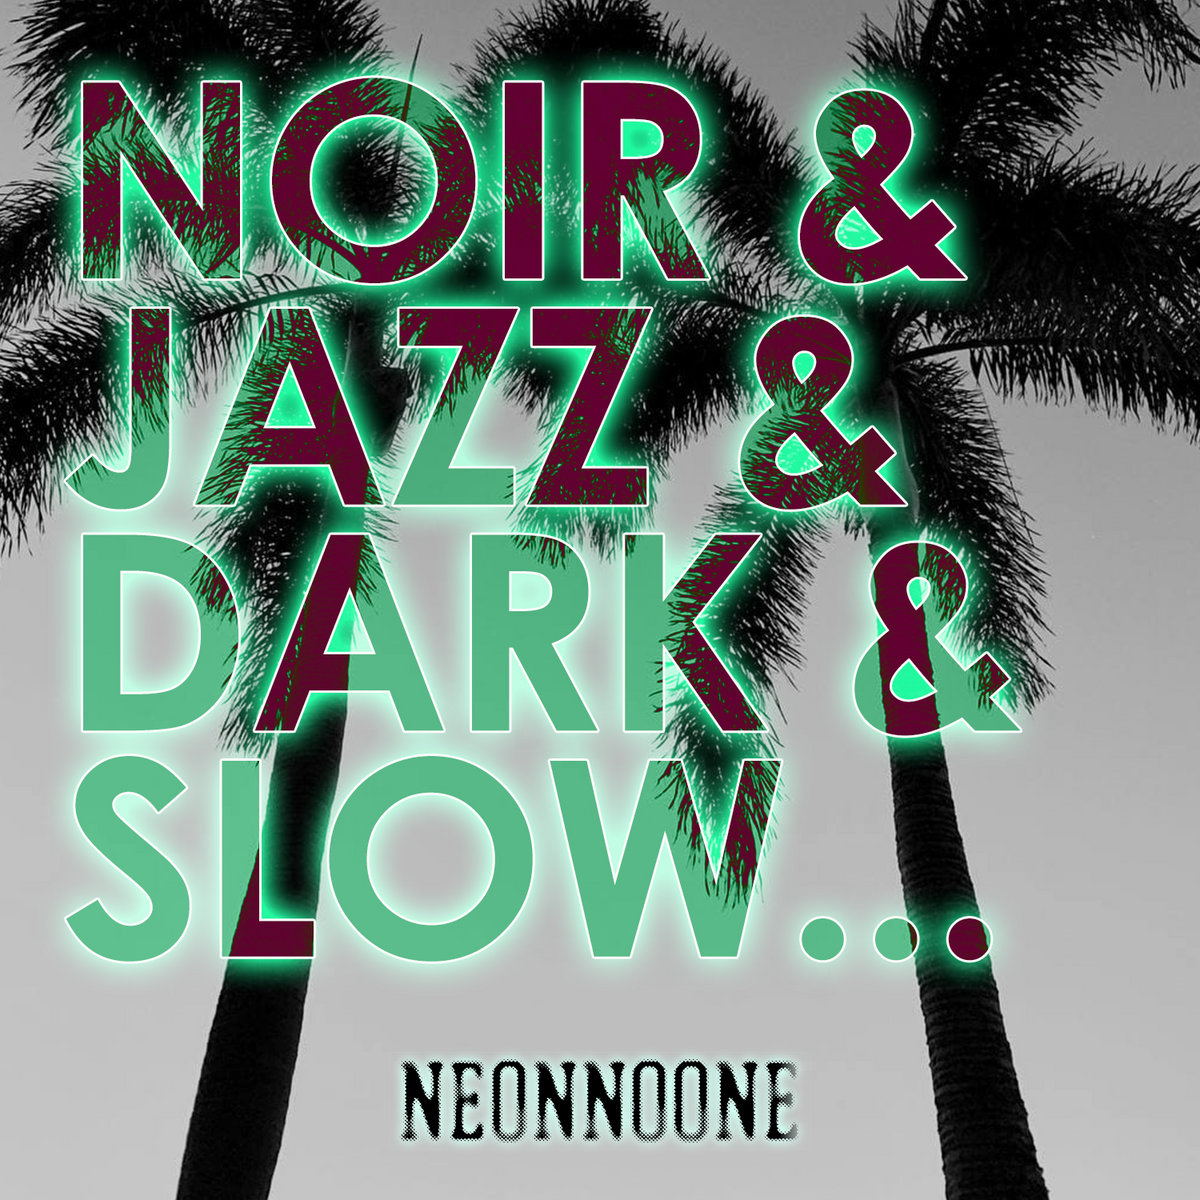 NEONNOONE - Noir & Jazz & Dark & Slow...